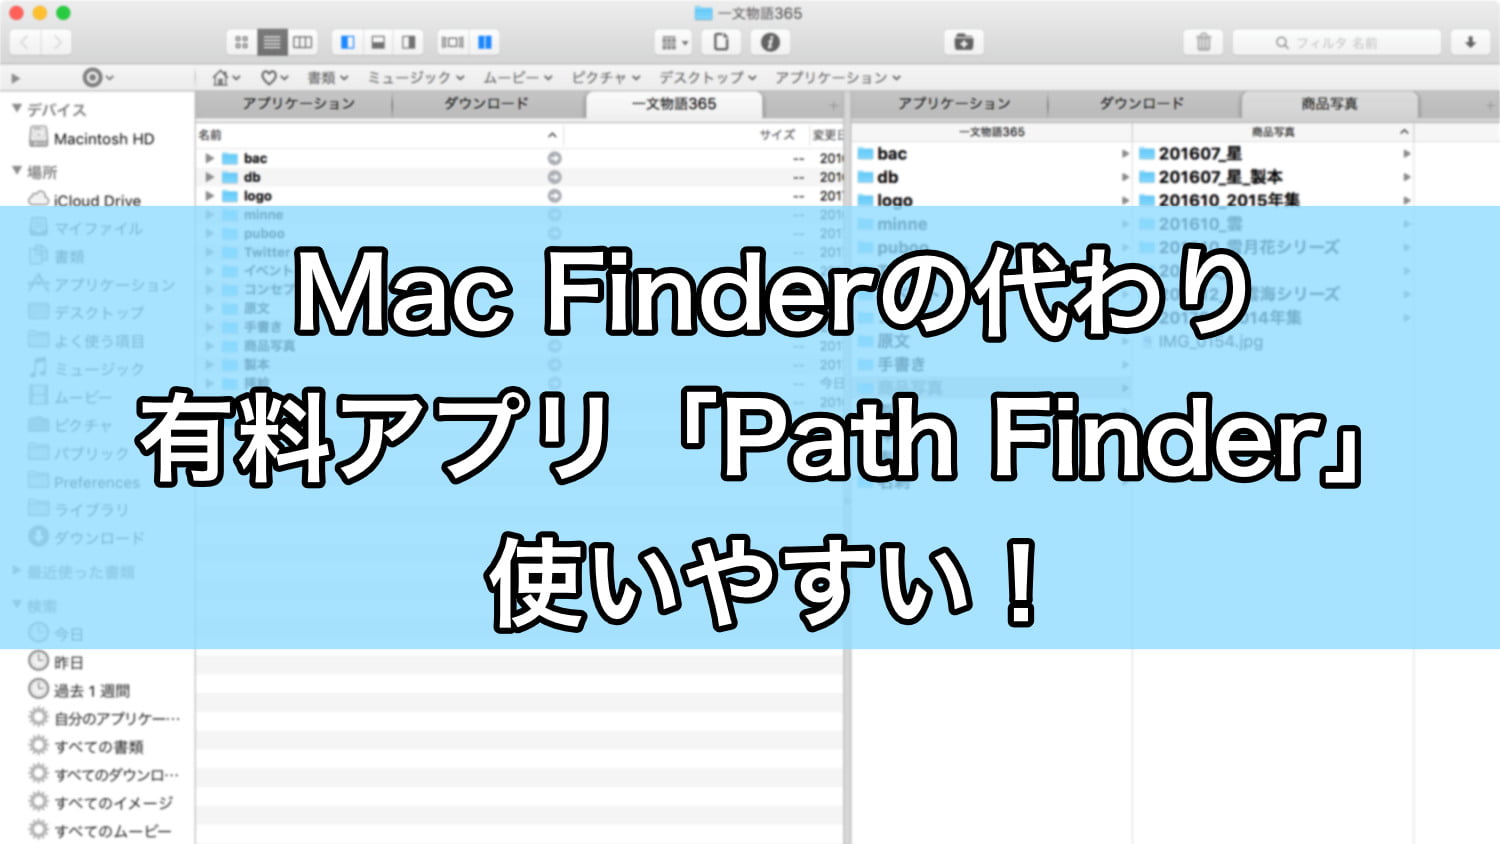 Finderの代替え有料アプリ Path Finder でmacのファイル管理がしやすくなる タブの記憶もできる優れもの